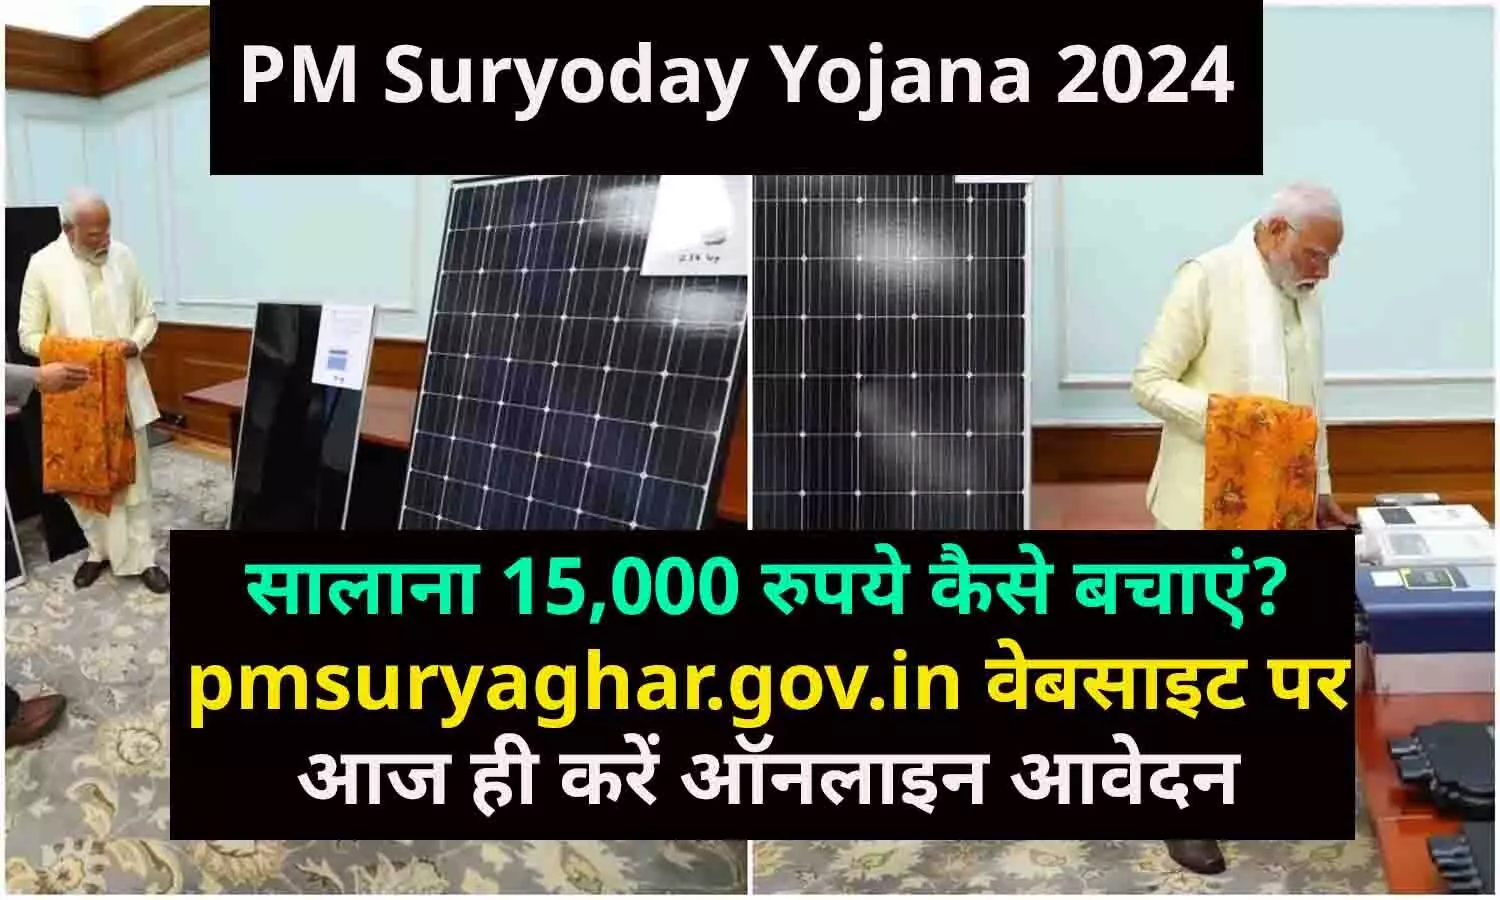 PM Suryoday Yojana 2024: सालाना 15,000 रुपये कैसे बचाएं? pmsuryaghar.gov.in वेबसाइट पर आज ही करें ऑनलाइन आवेदन